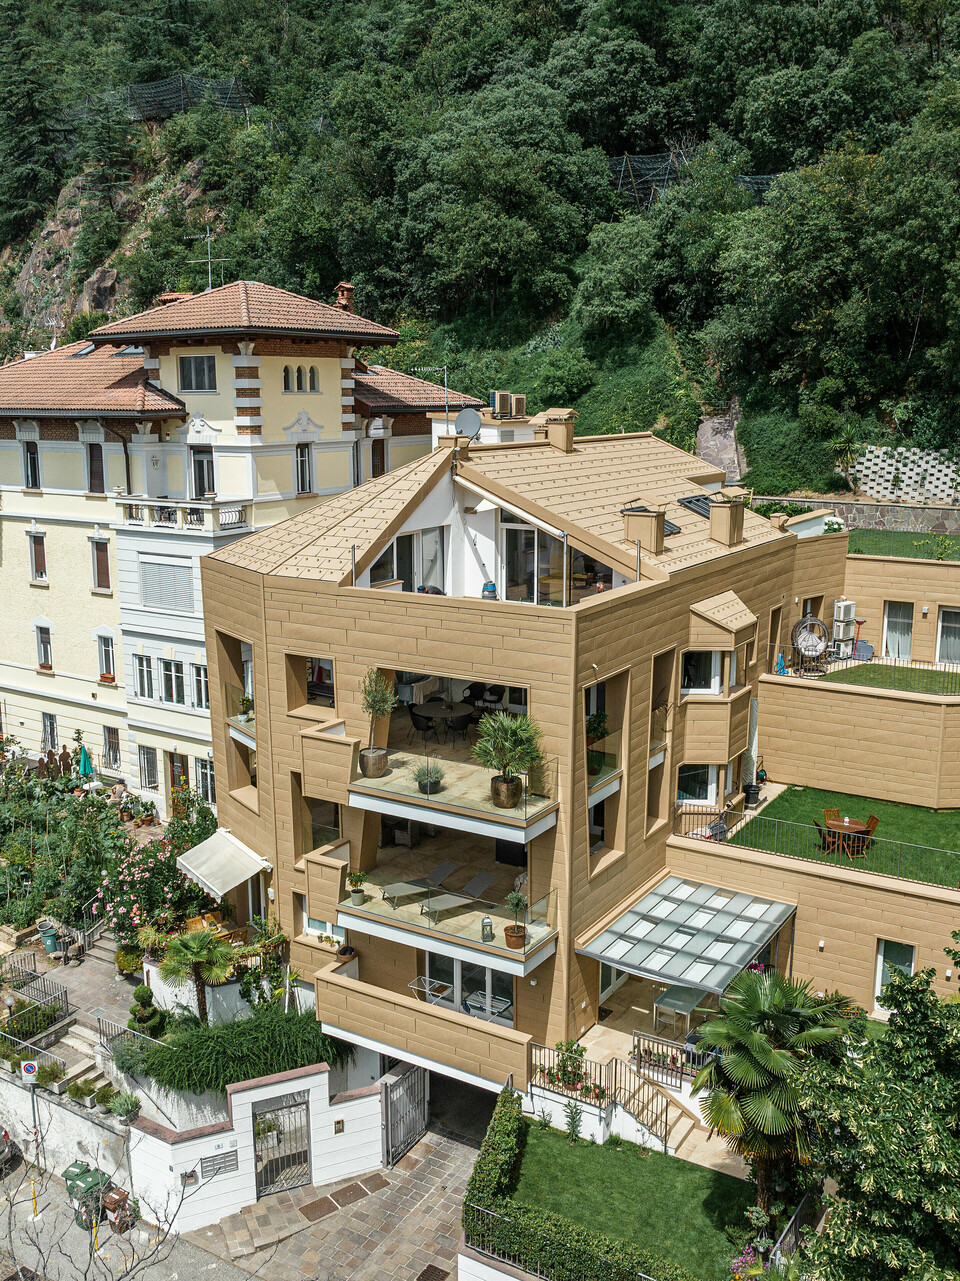 Architektonisches Meisterwerk: Die Villa Laura in Südtirol ist umhüllt von PREFA Aluminium in P.10 Sandbraun. Die innovativen Kantungen der Dachpaneele FX.12 und Siding.X prägen das einzigartige Design der Wohnanlage und verleihen ihr eine dynamische und moderne Ausstrahlung, die nahtlos mit der umgebenden Natur verschmilzt. Das hochwertige und langlebige Aluminium gewährleistet eine elegante Ästhetik sowie eine dauerhafte Beständigkeit gegen Witterungseinflüsse.